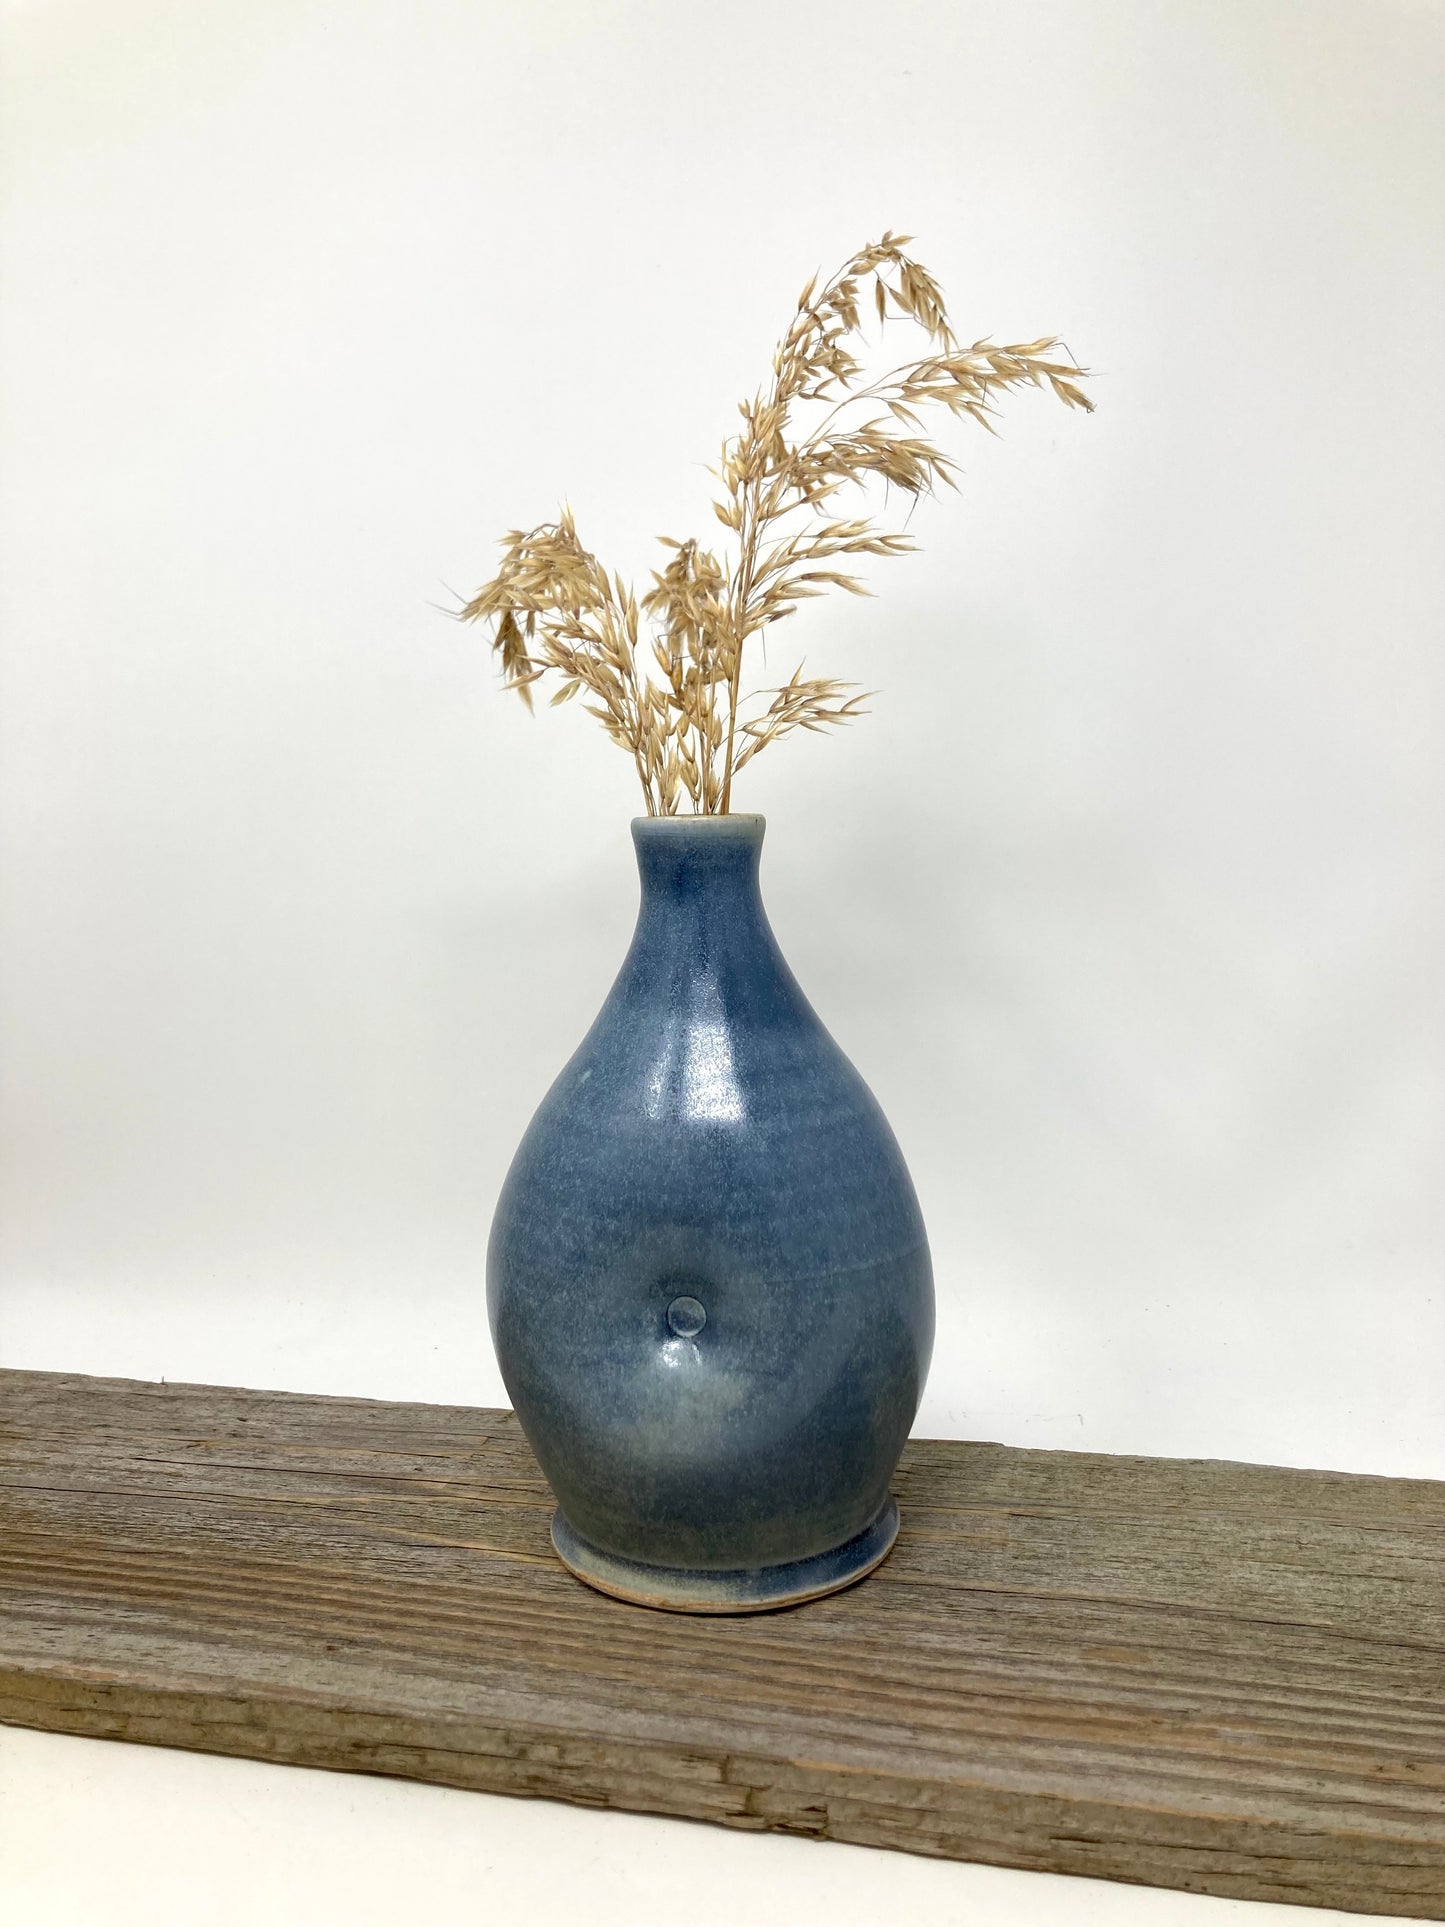 Dimpled Bottle Vase in Blue-Bronze glaze